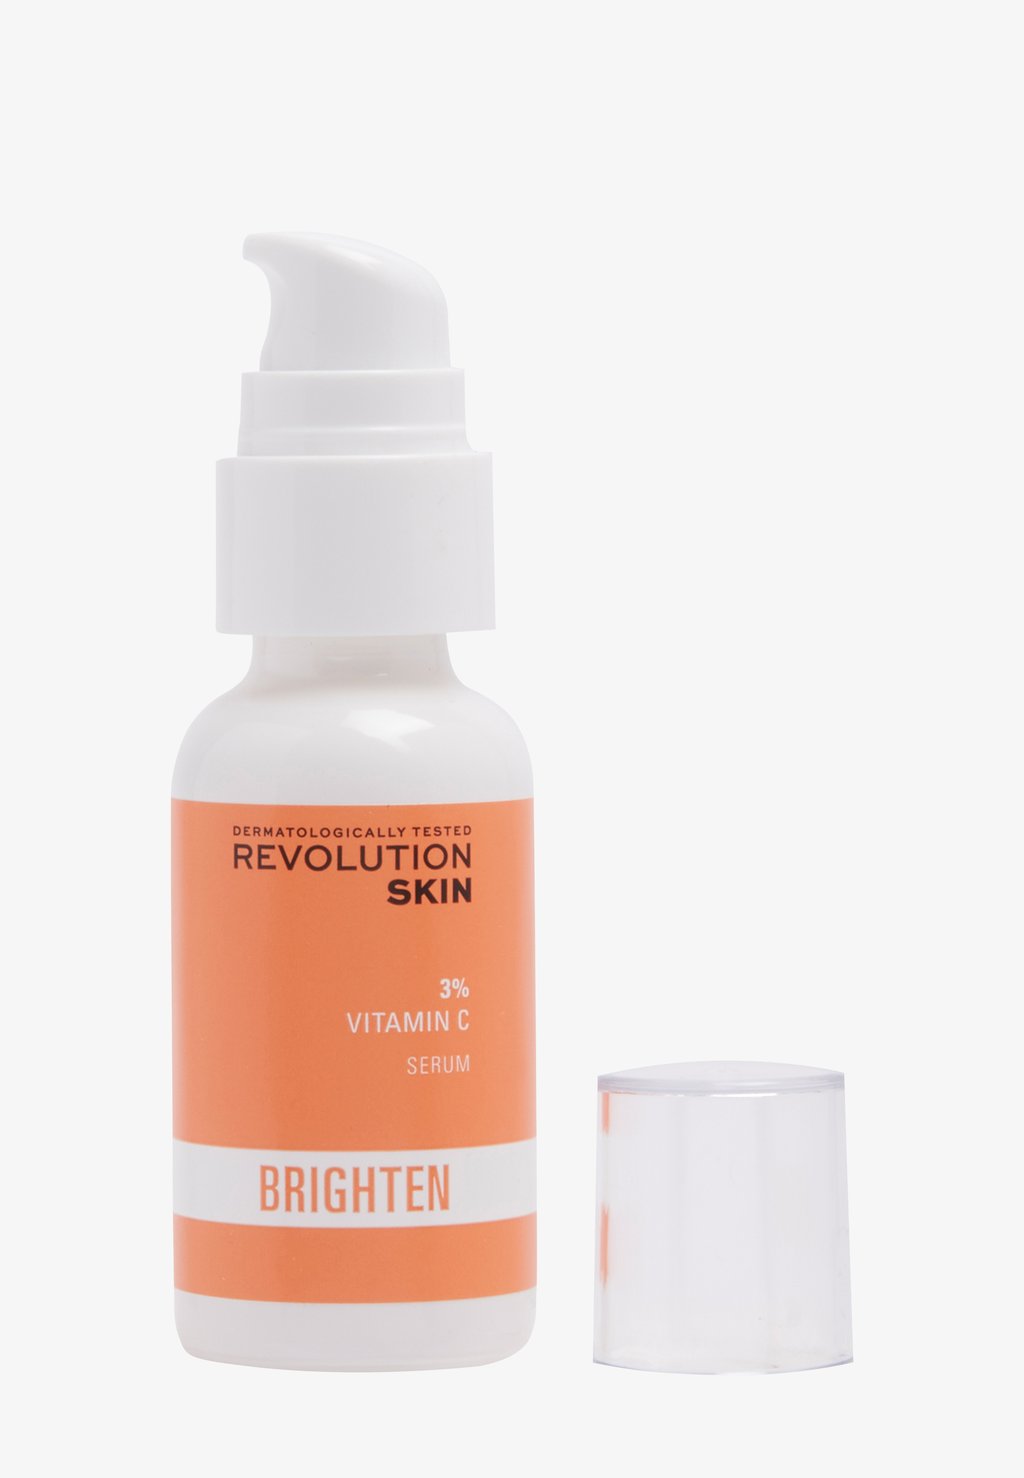 revolution skincare 20% сыворотка с витамином с для сияния кожи Сыворотка 3% Сыворотка С Витамином С Revolution Skincare